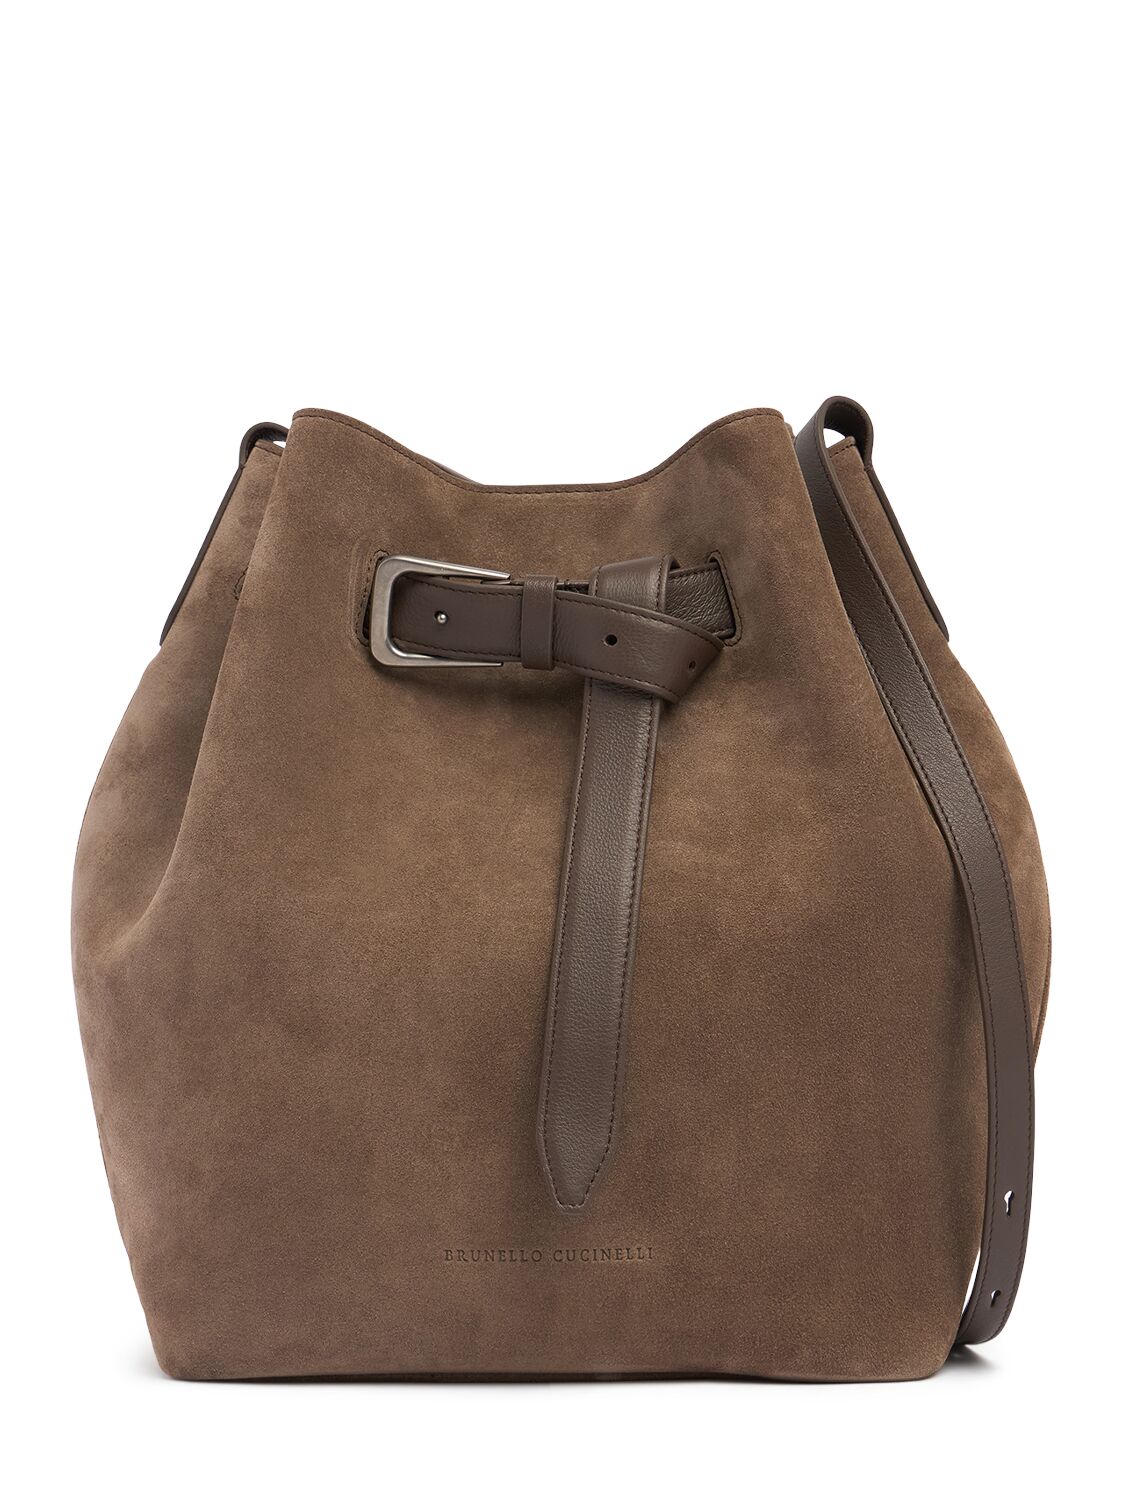 Brunello Cucinelli Softy Velour Bucket Bag In Medium Brown 01